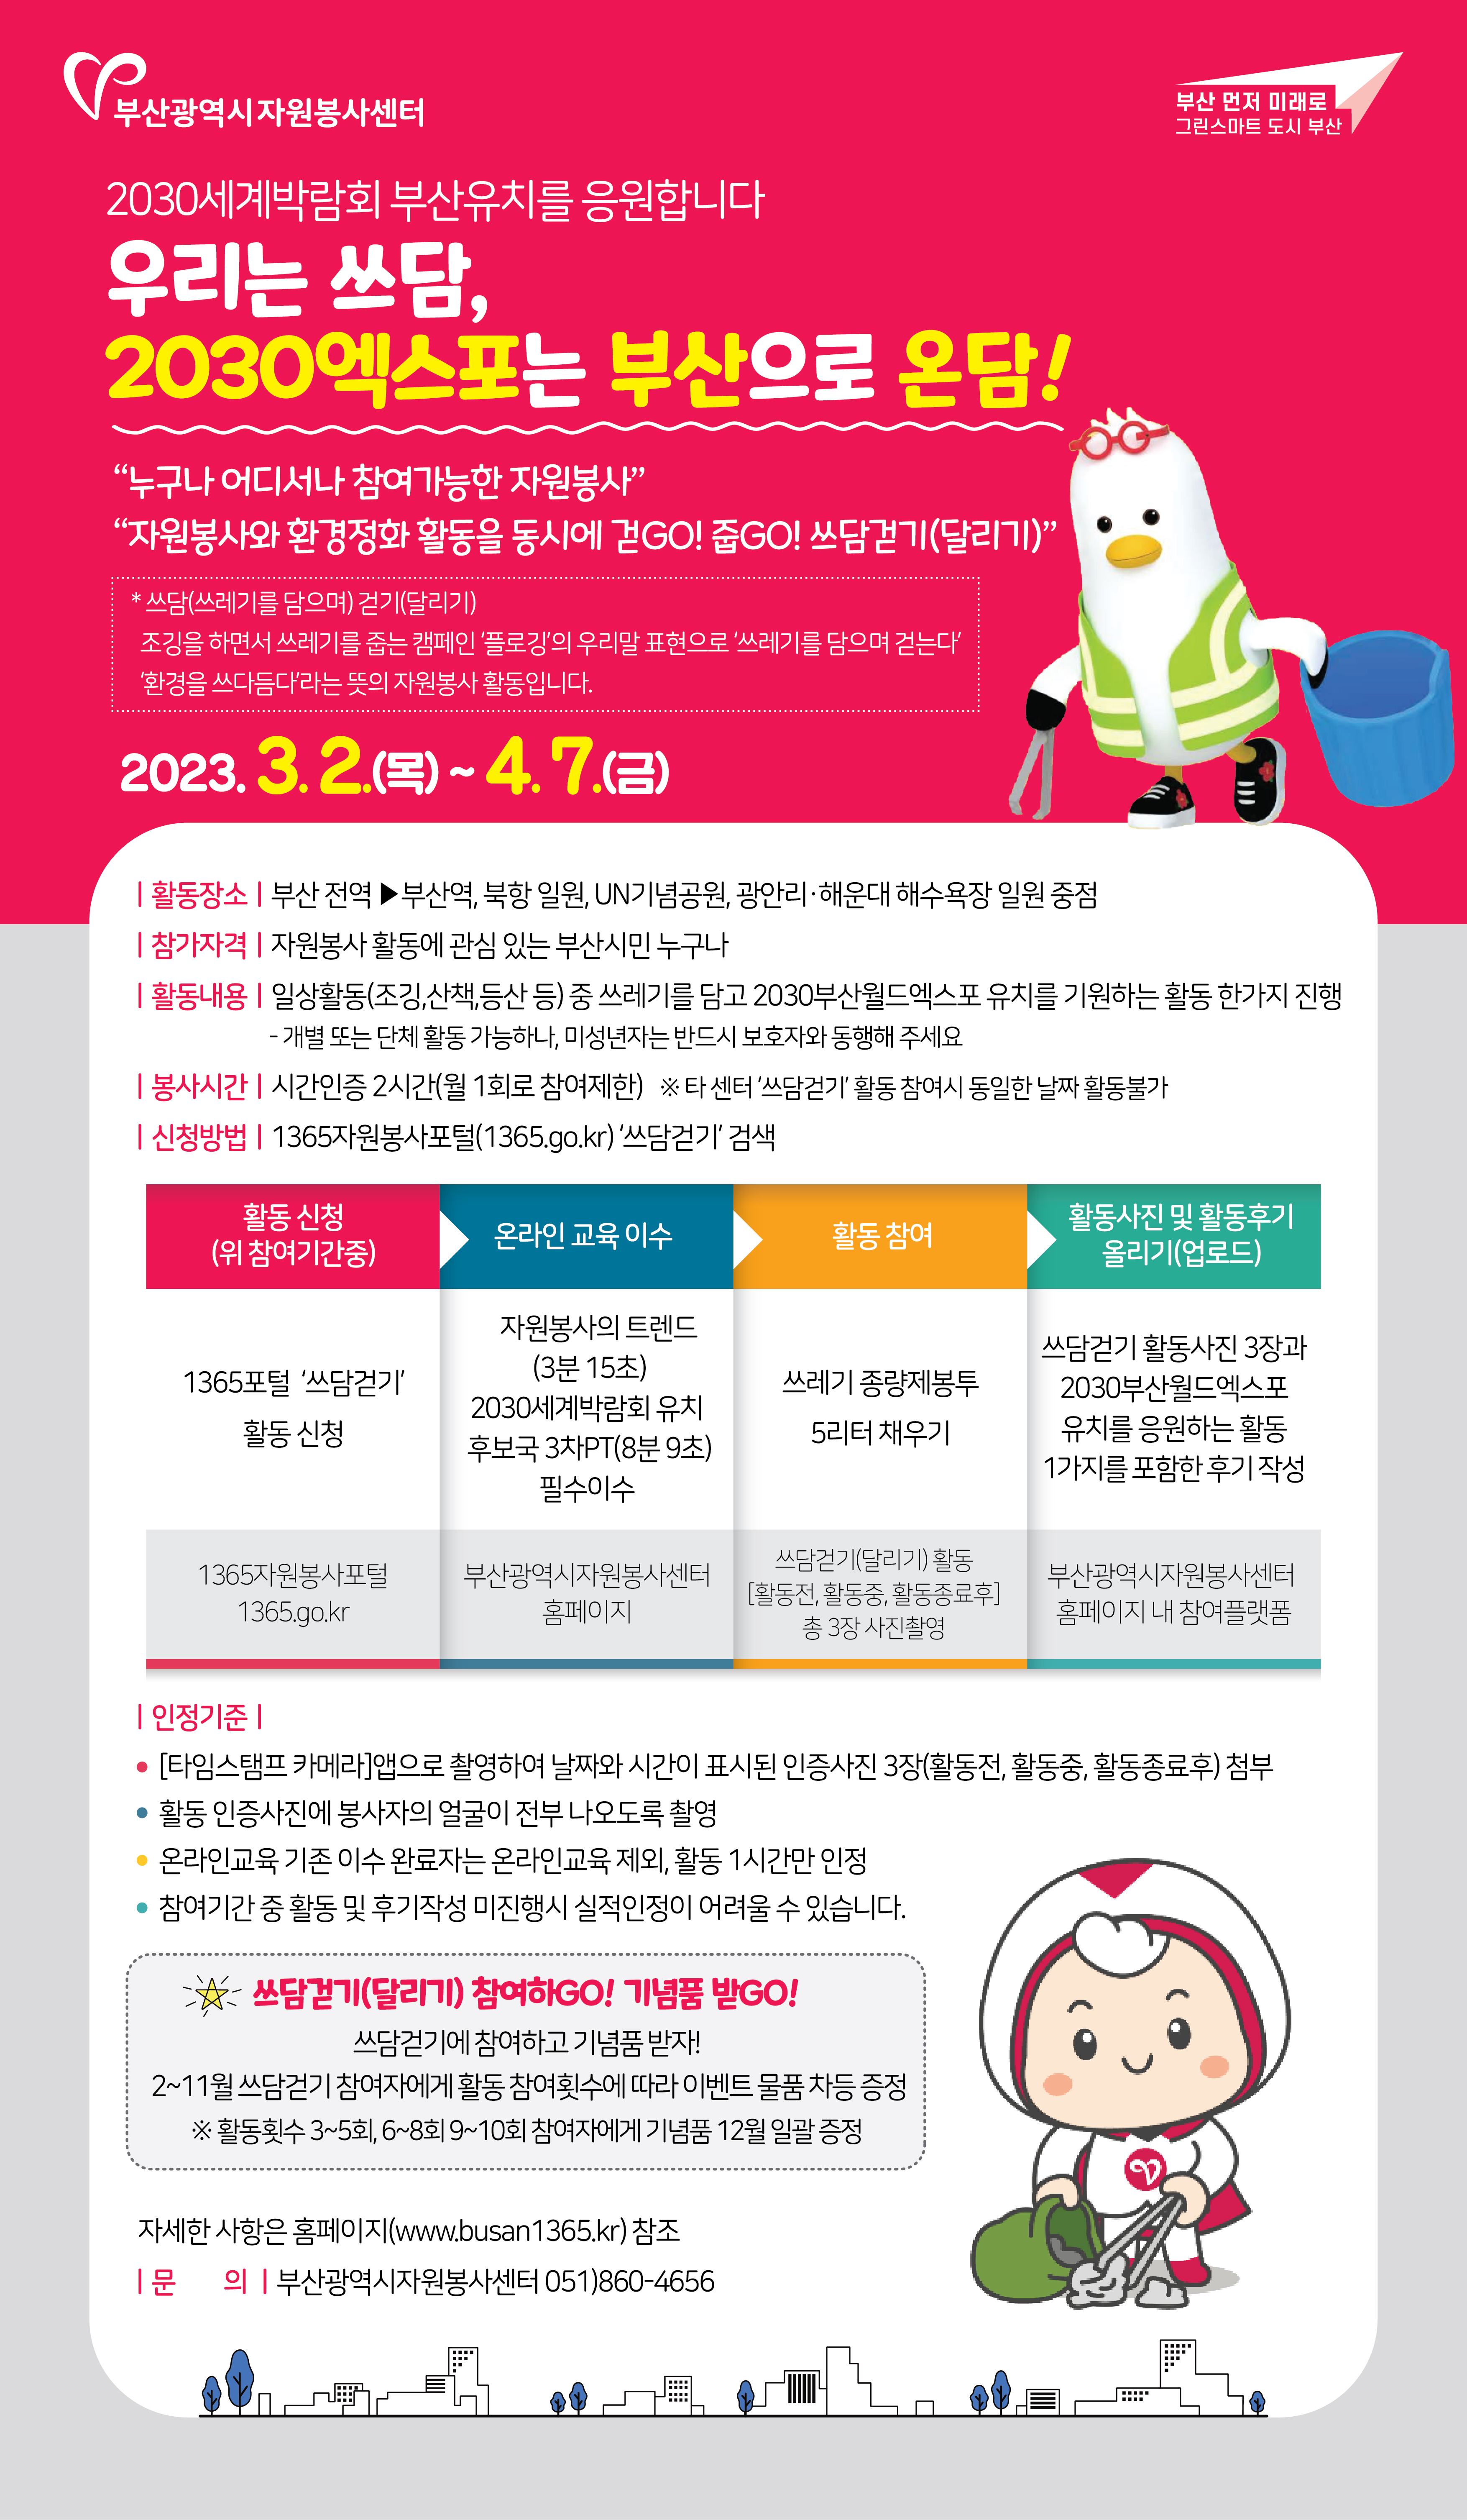 2030엑스포 유치 기원 시민 참여 줍깅(쓰담달리기) 캠페인 안내0